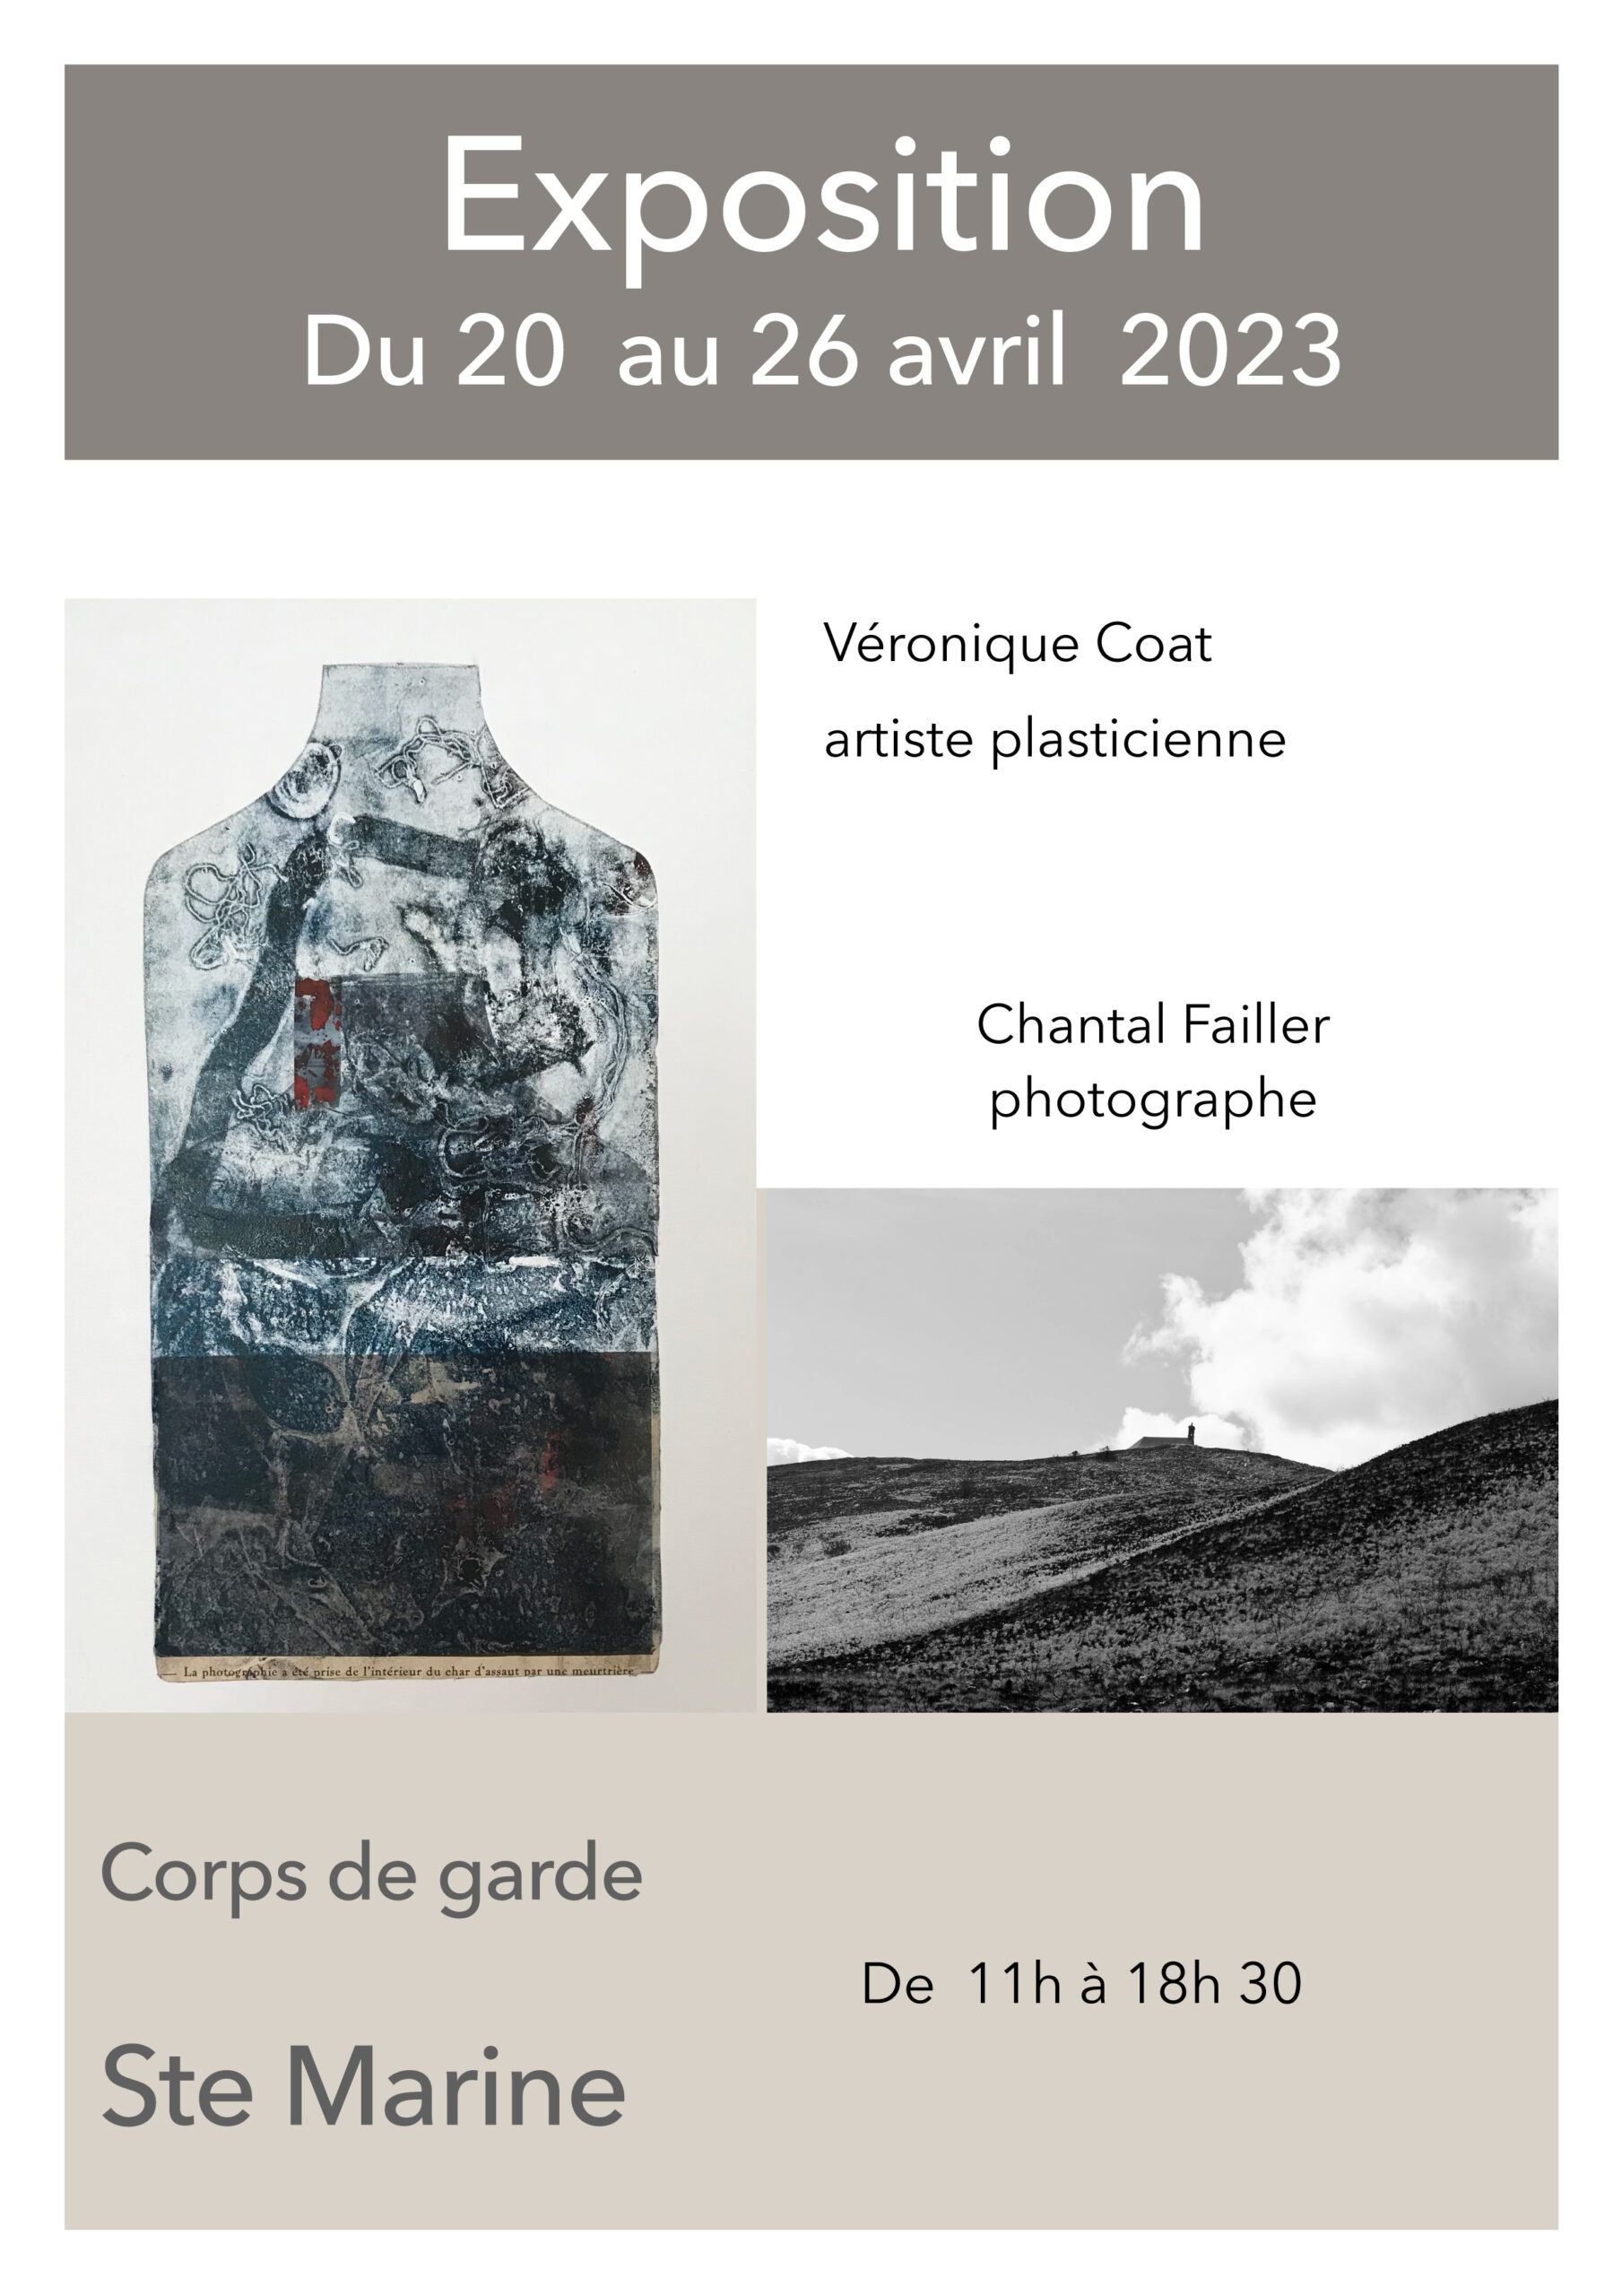 Exposition "Véronique Coat et Chantal Failler"